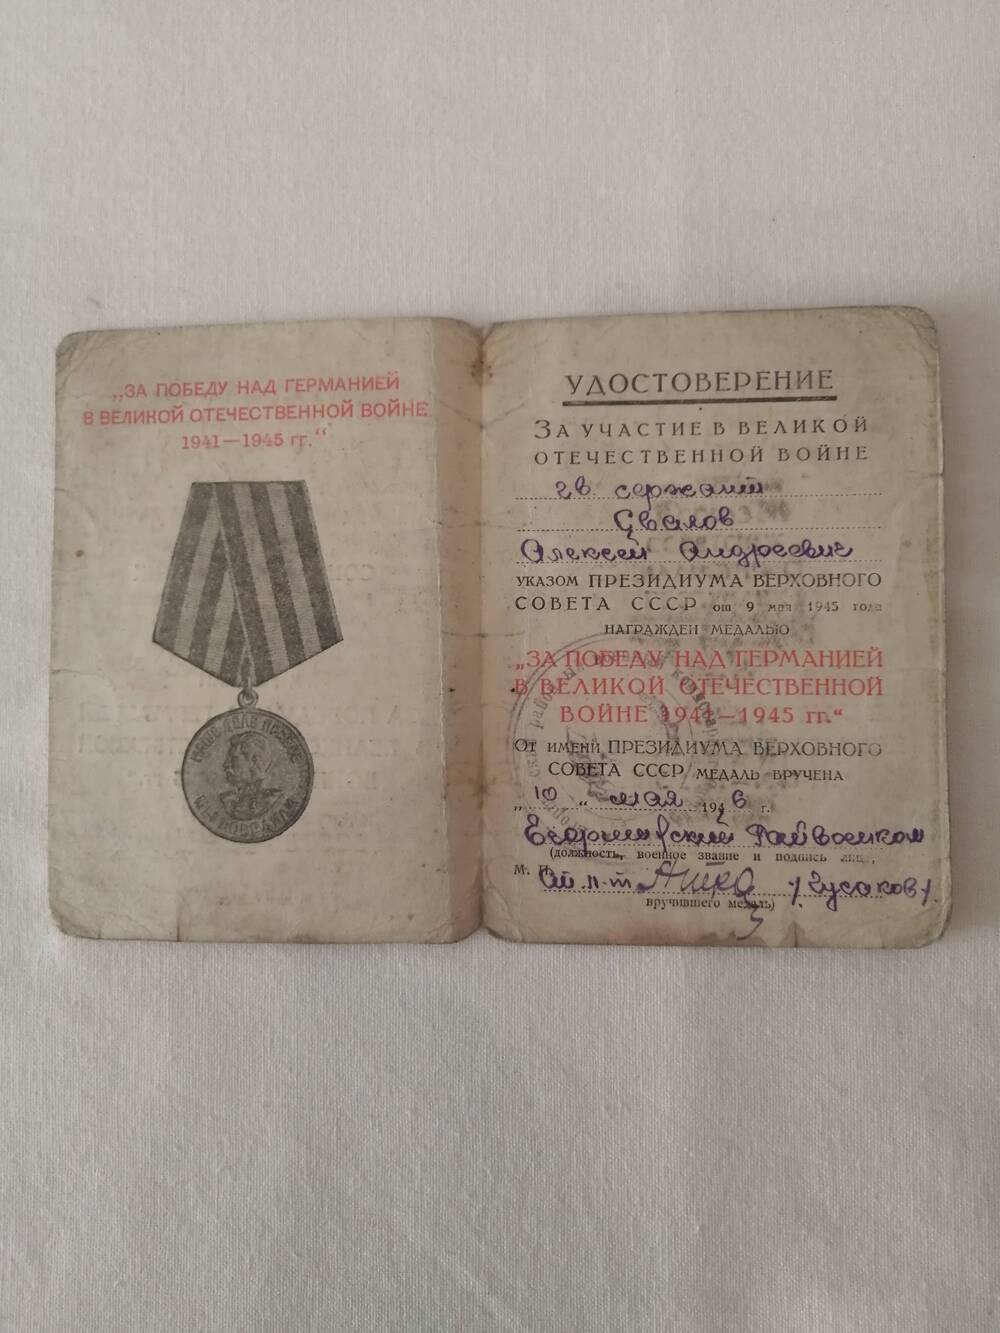 Удостоверение За победу над Германией в ВОВ 1941-1945 гг. Свалова Алексея Андреевича